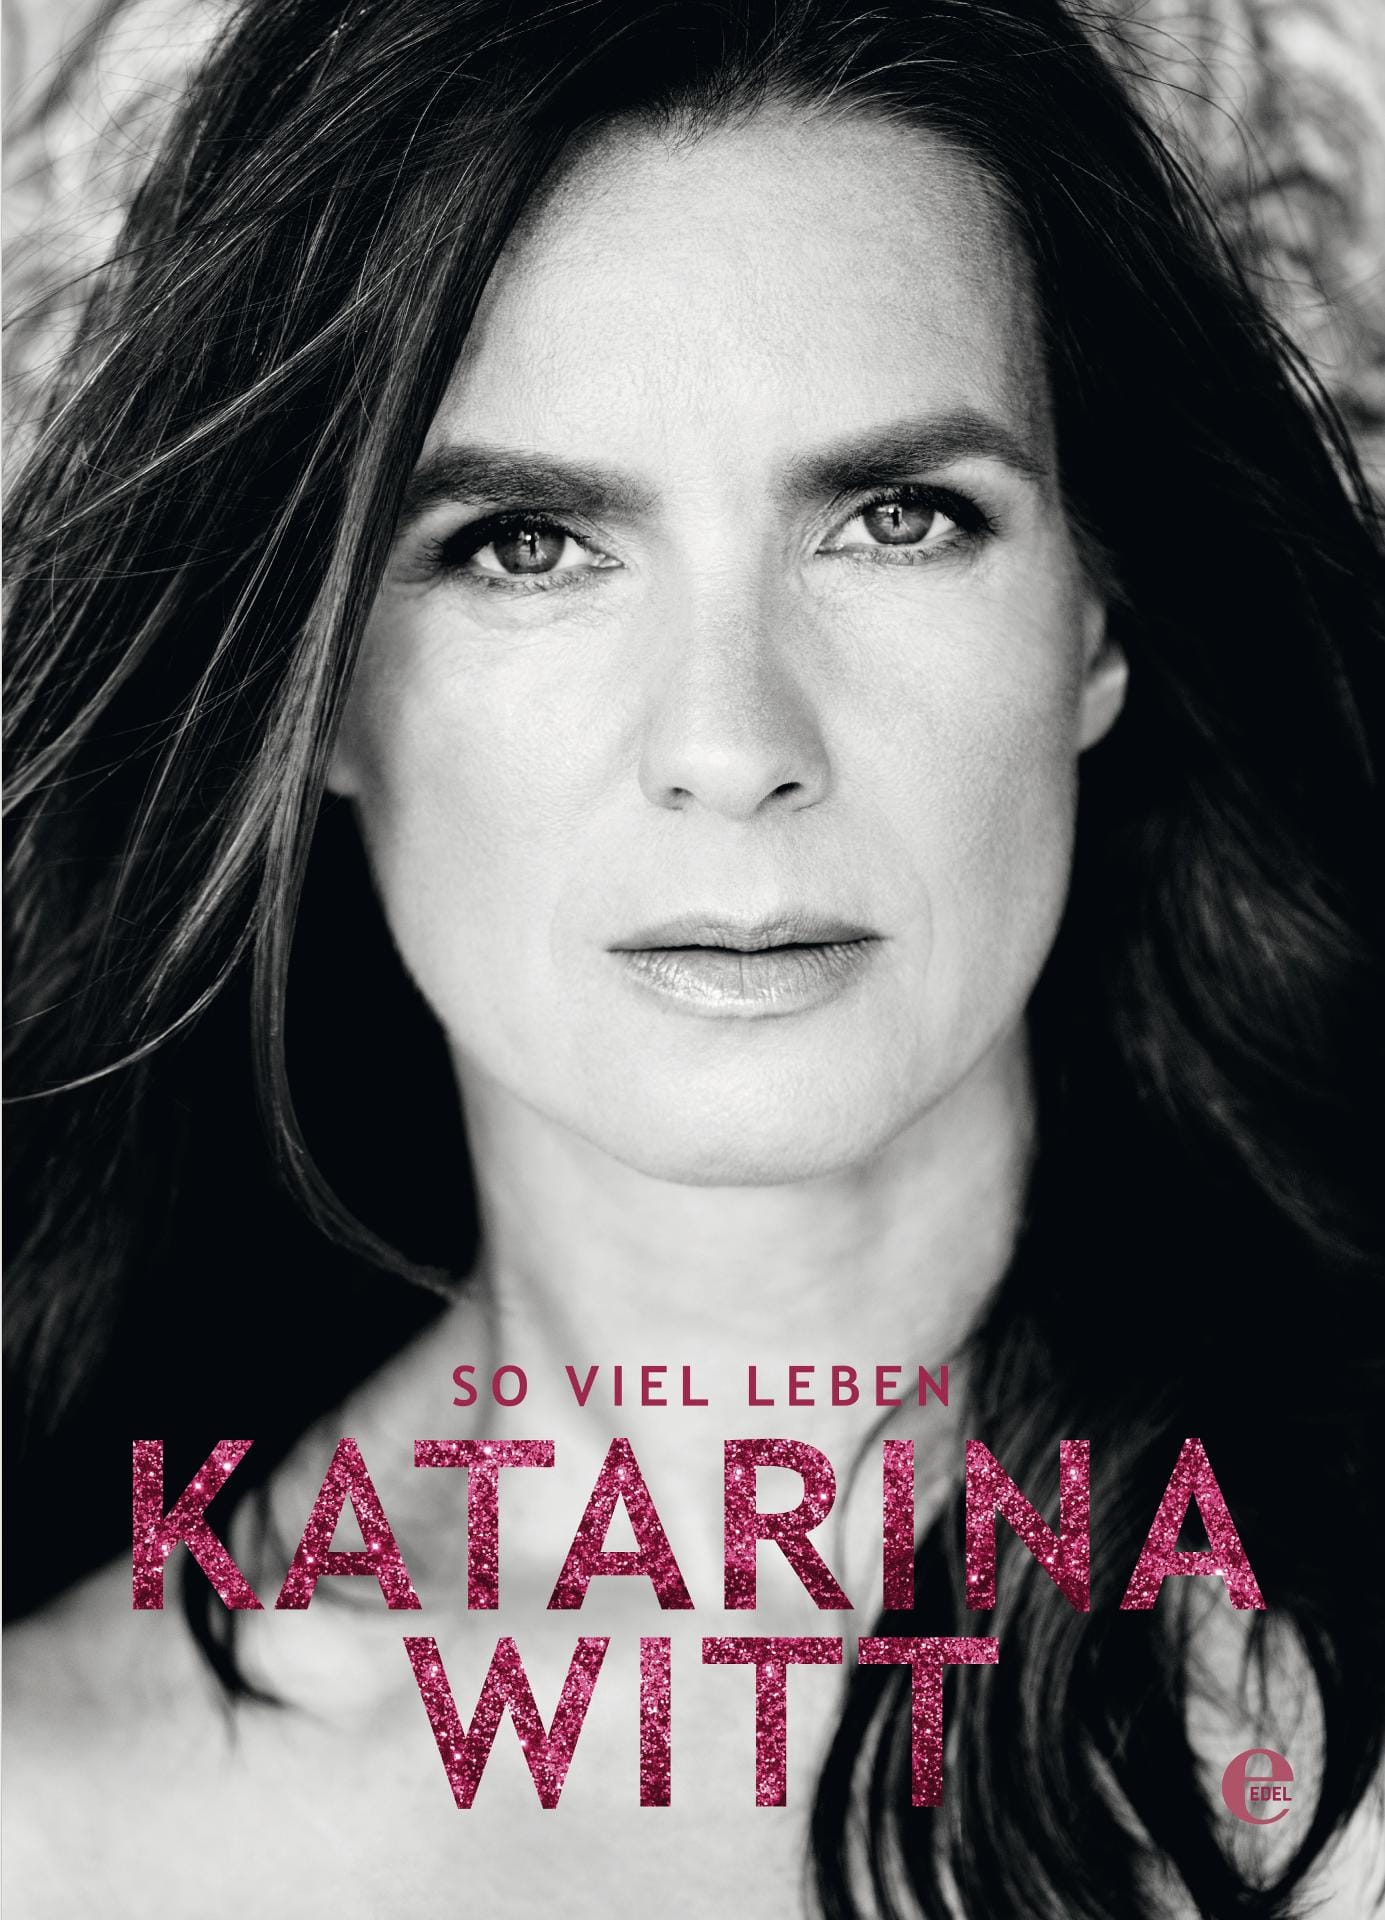 Katarina Witt öffnet ihr ganz privates Bildarchiv und gestattet in ihrem Bildband "Katarina Witt - So viel Leben" ungewohnte Einblicke.